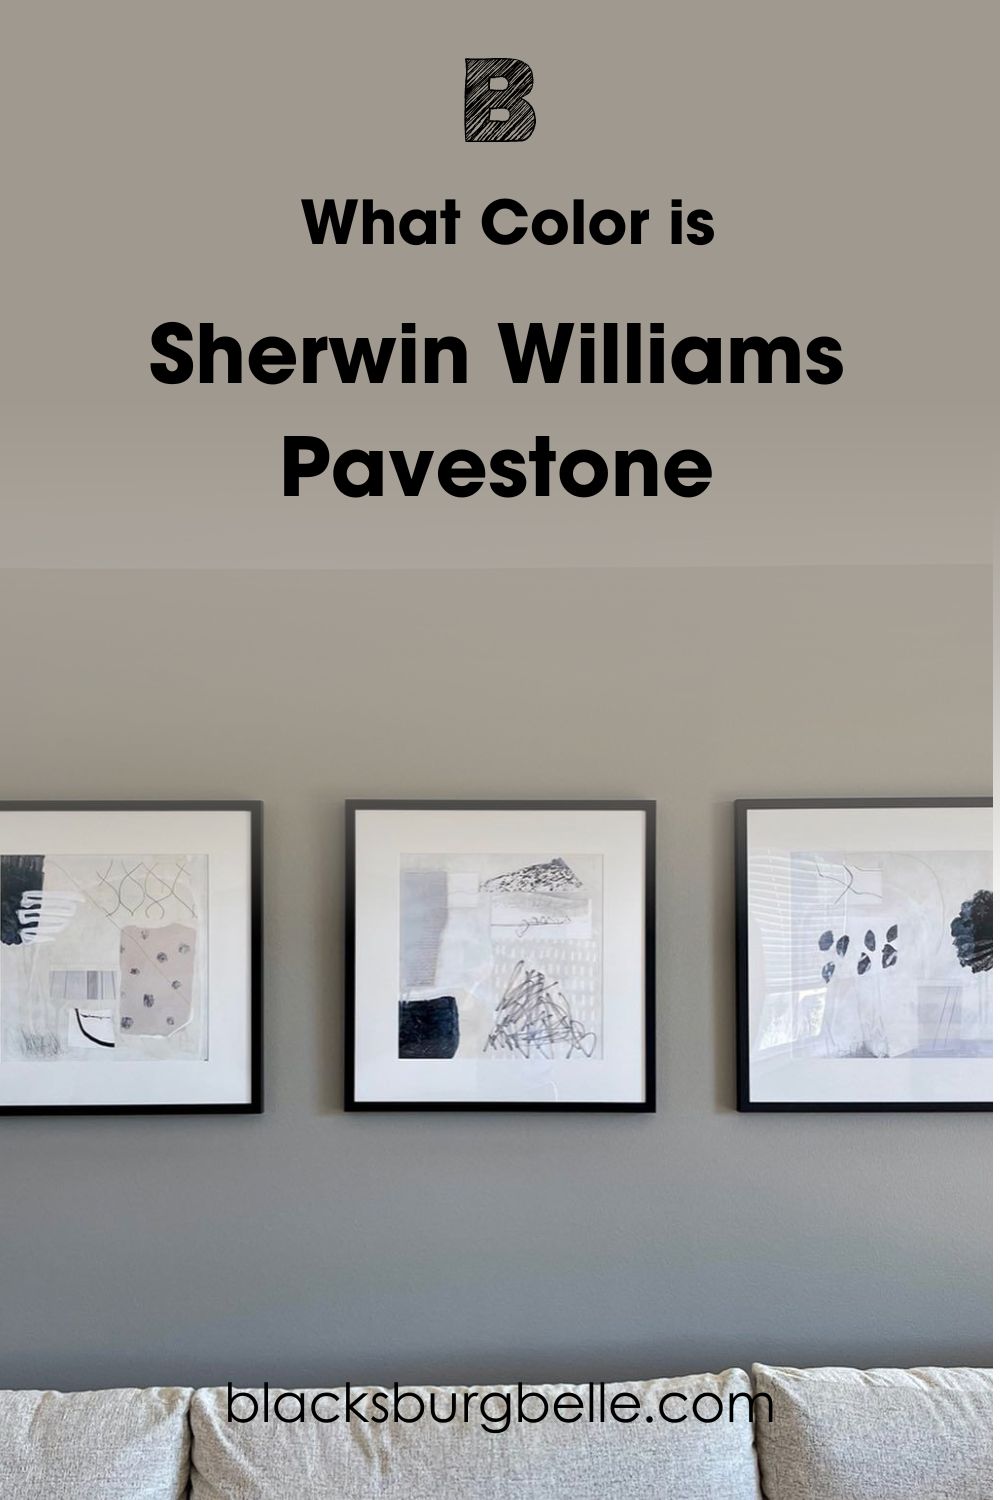 Sherwin Williams Pavestone SW 7642